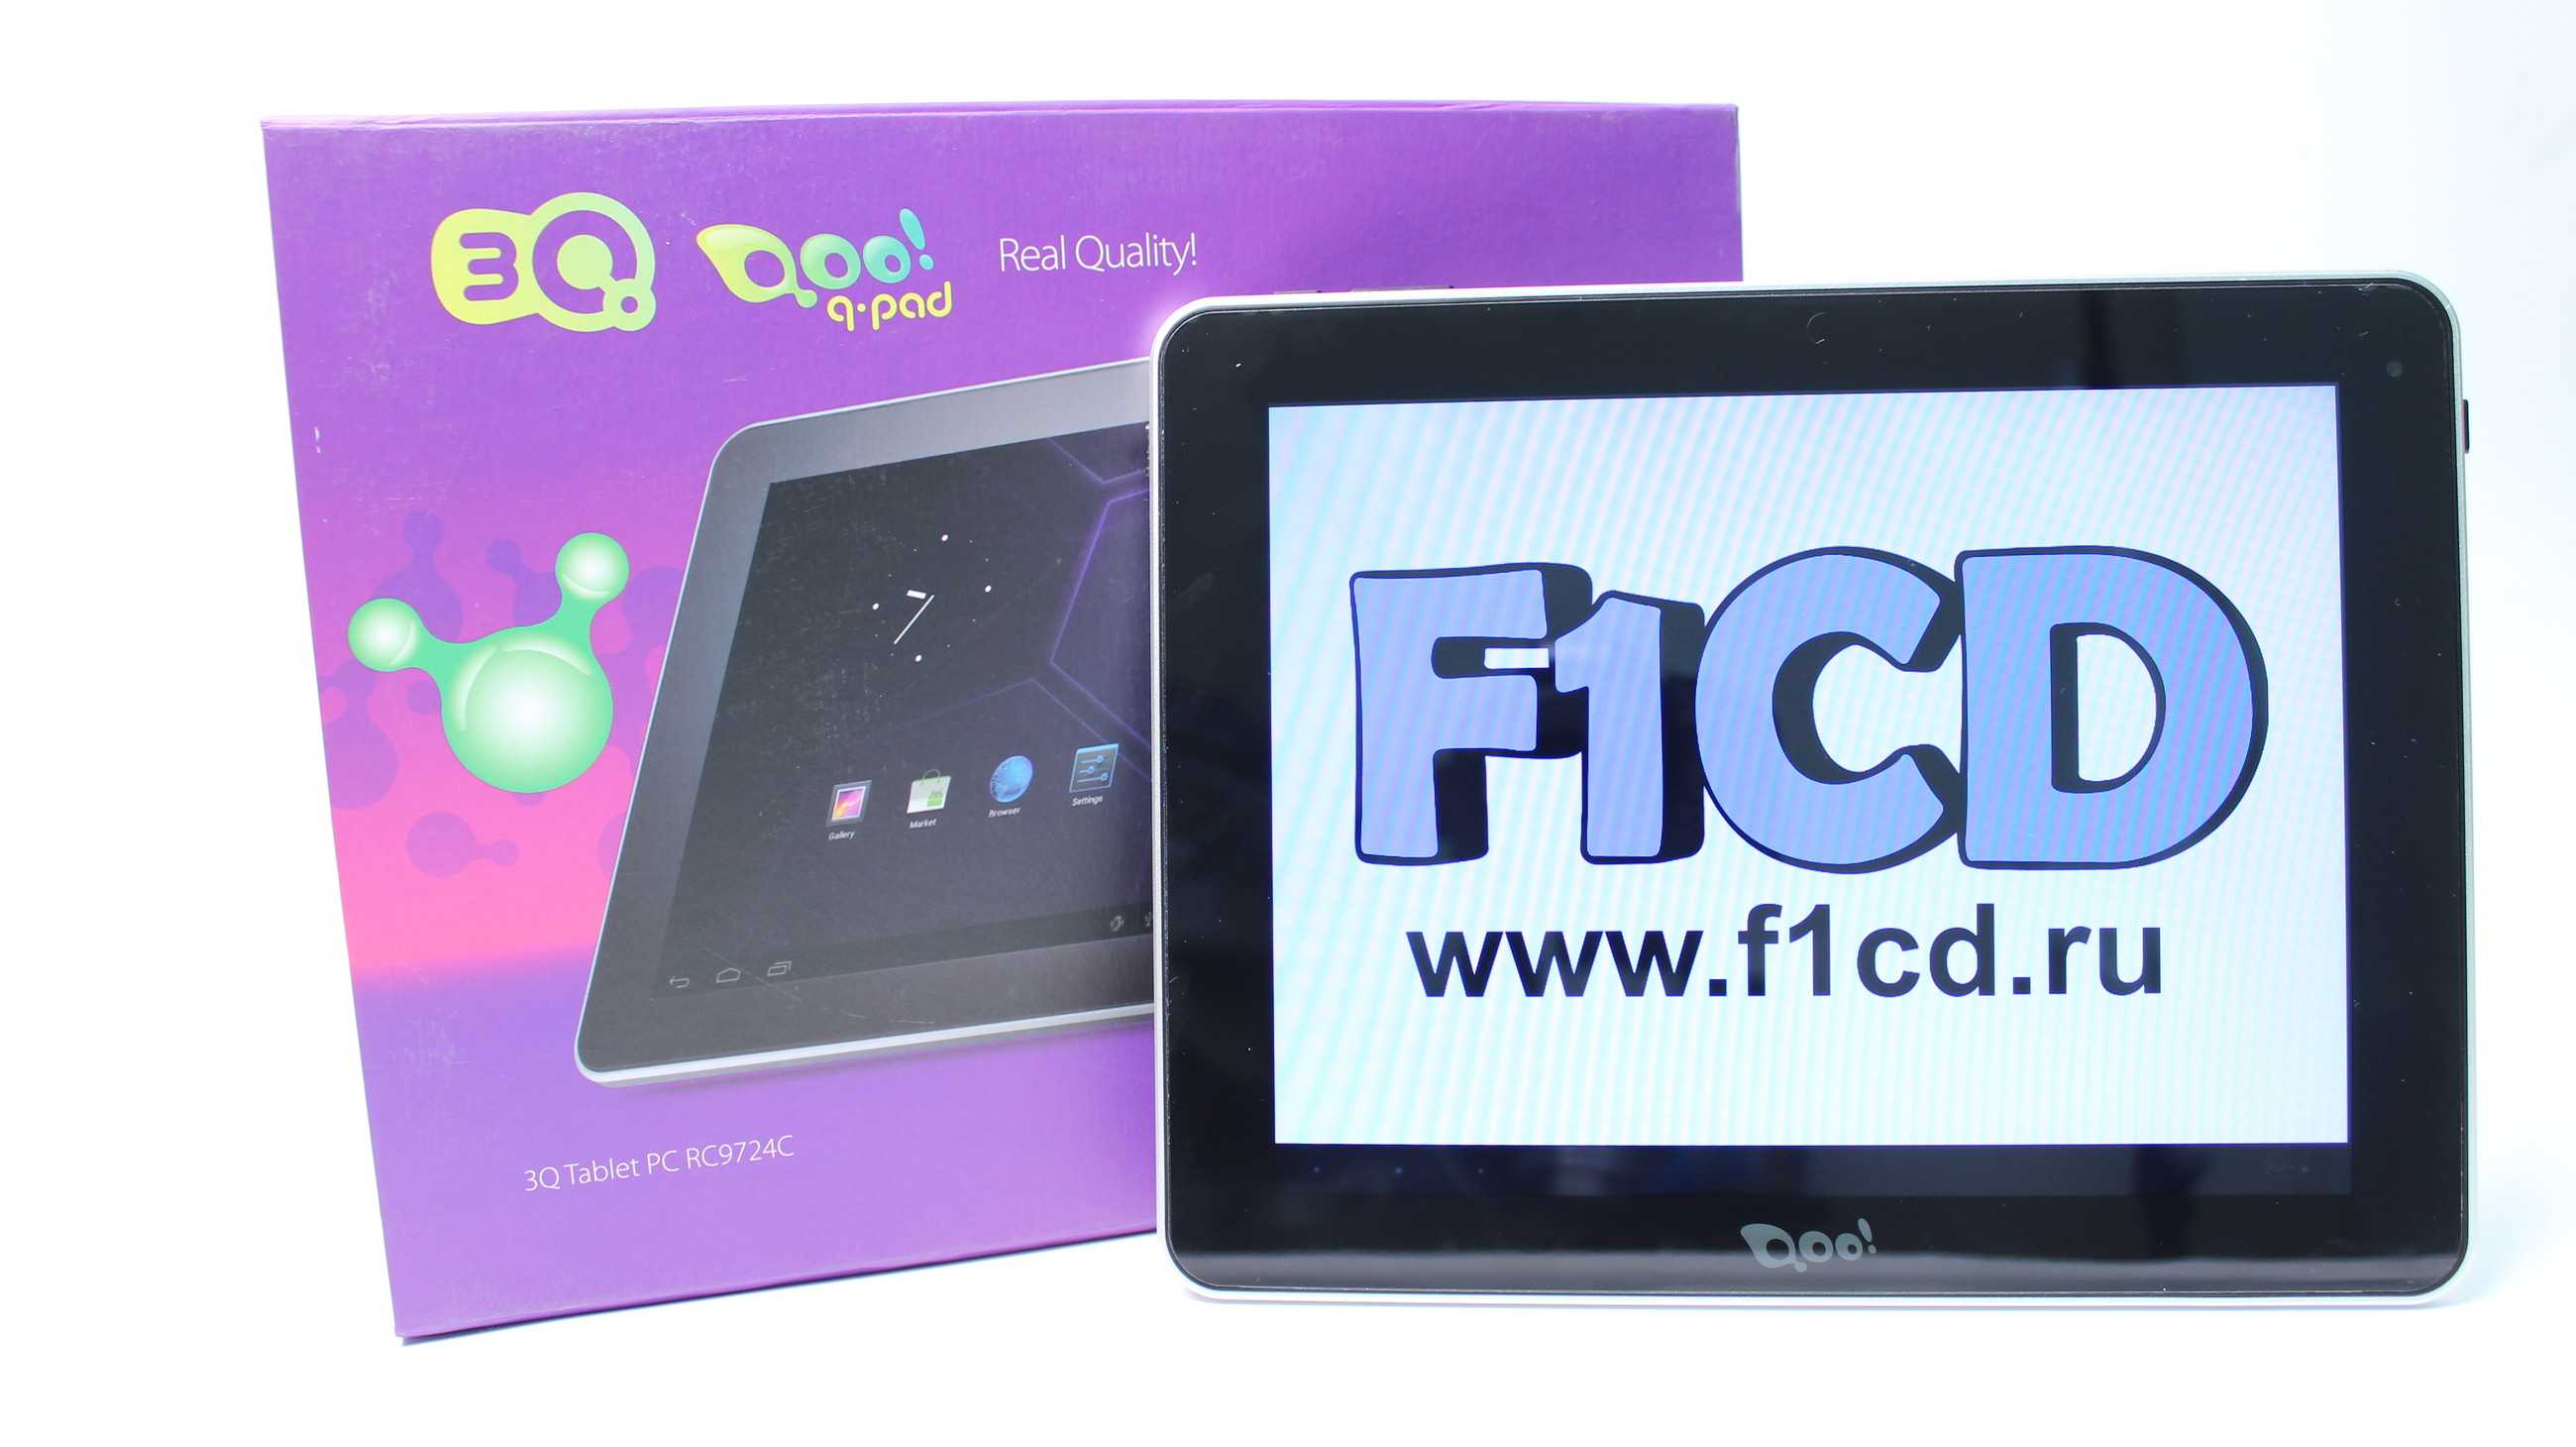 Планшет 3q qpad rc9726c 16 гб wifi серебристый — купить, цена и характеристики, отзывы